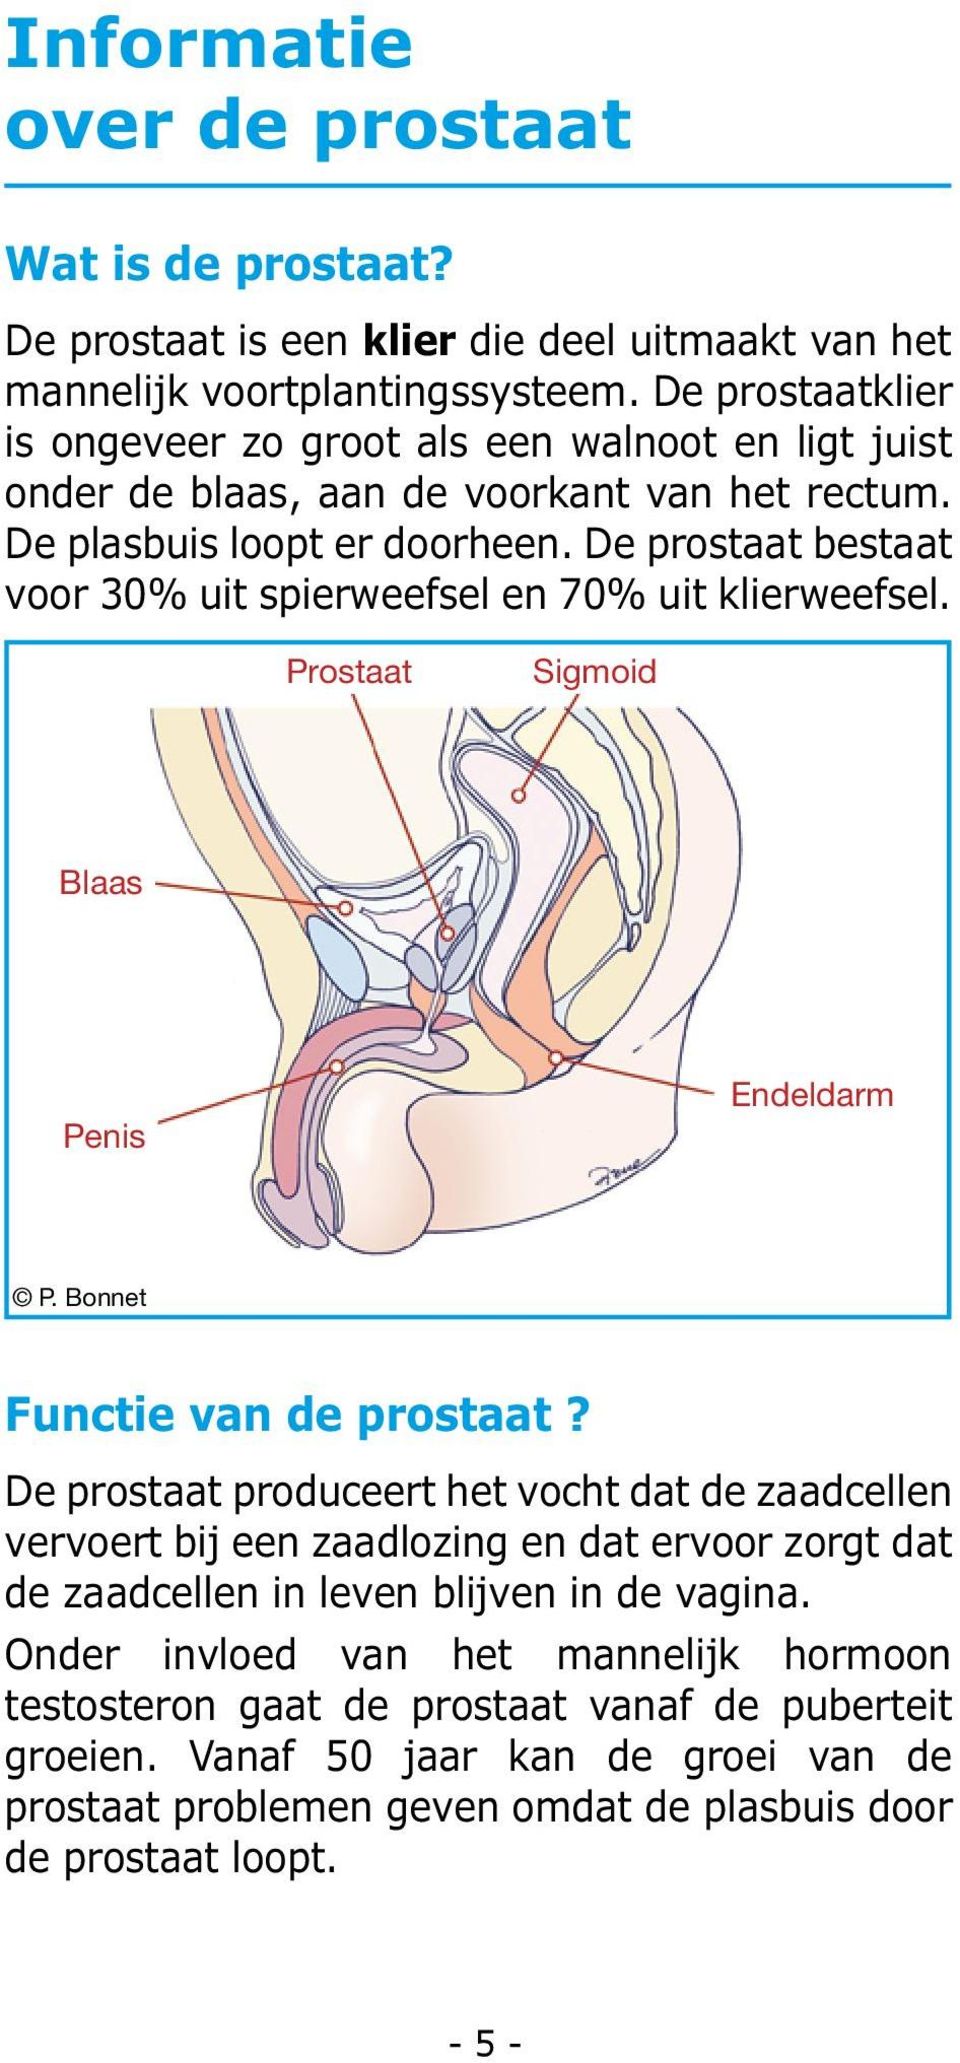 De prostaat bestaat voor 30% uit spierweefsel en 70% uit klierweefsel. Prostaat Sigmoid Blaas Penis Endeldarm P. Bonnet Functie van de prostaat?